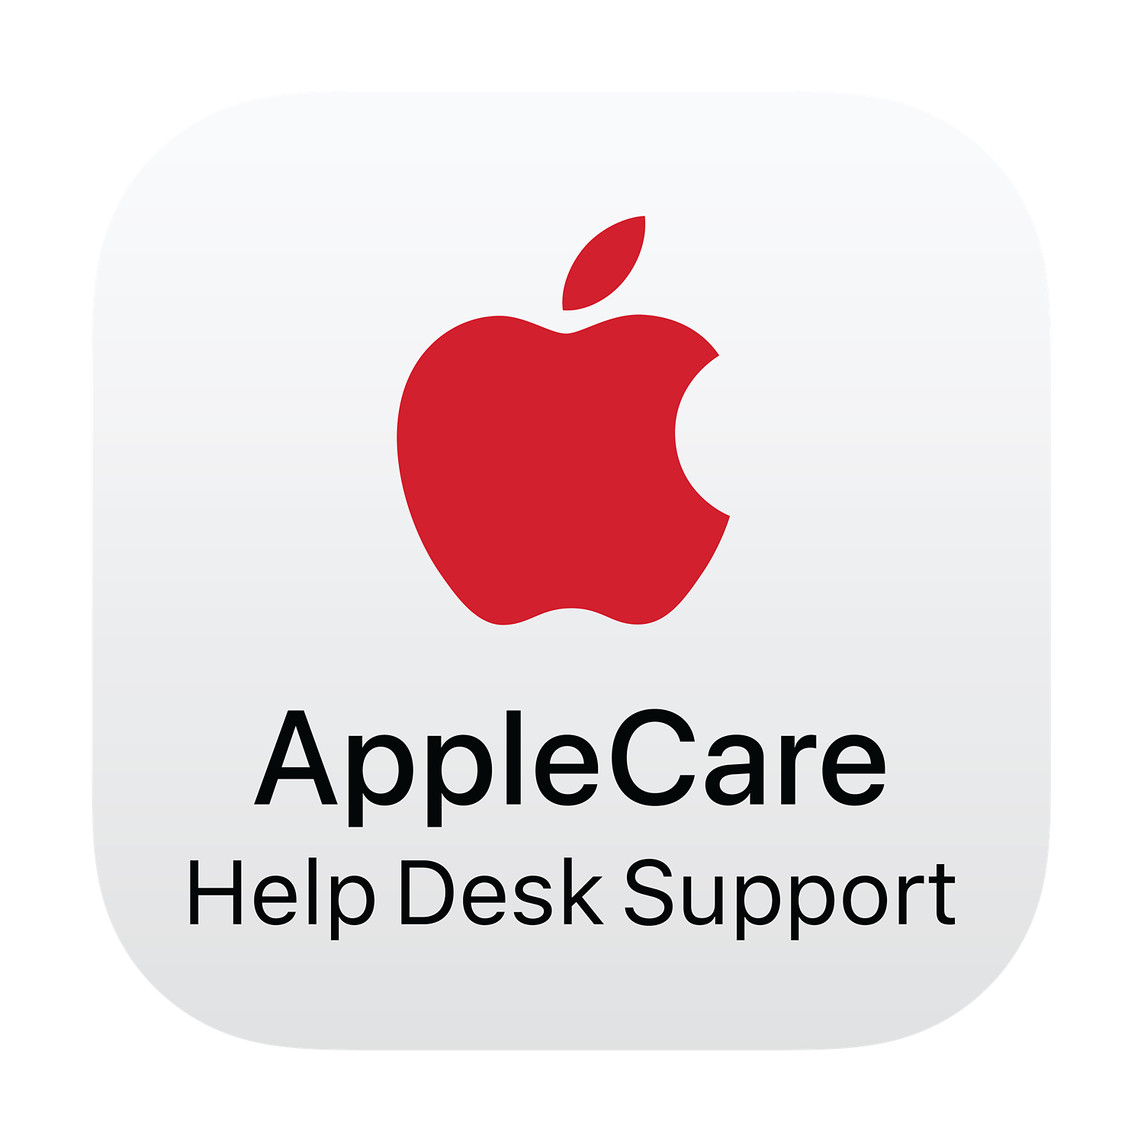 紅色 Apple 標誌，印有 AppleCare Help Desk Support 字樣